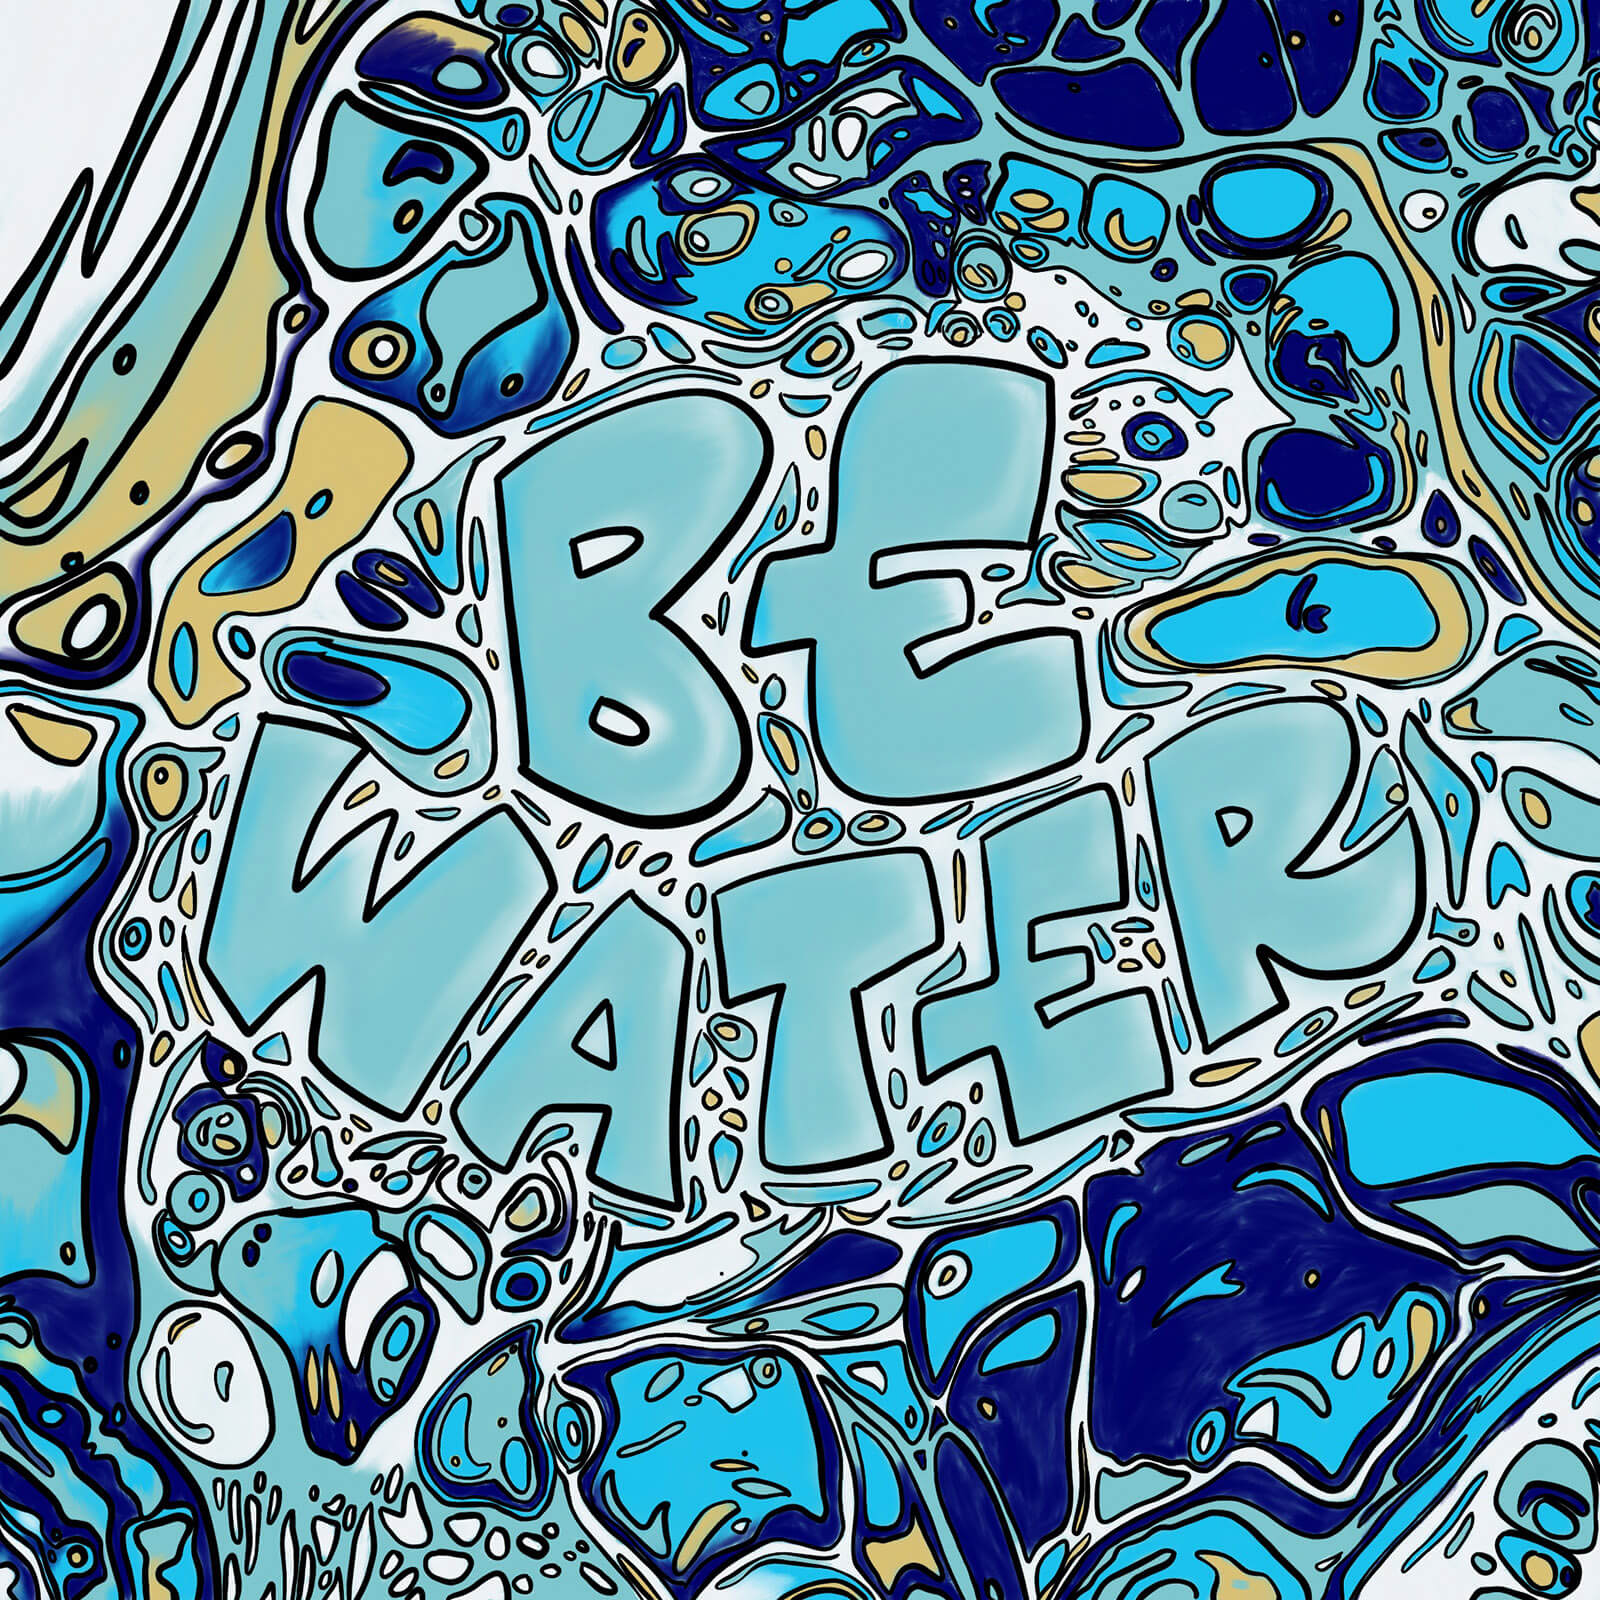 Be Water - Lisa Plattner